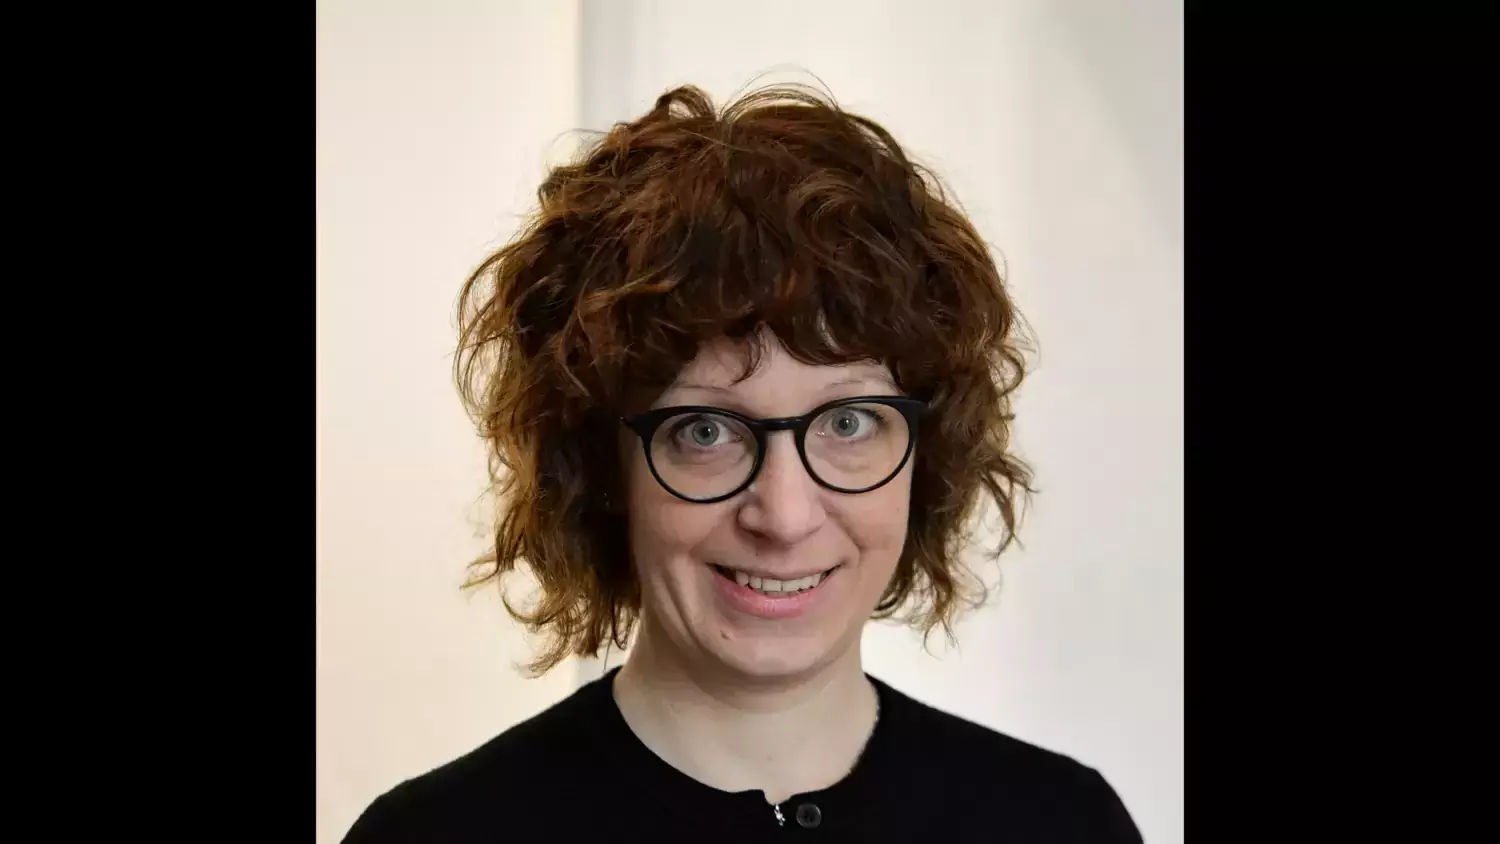 Profilfoto på Hedvig Glans. En kvinna med rött lockigt hår och svart tröja